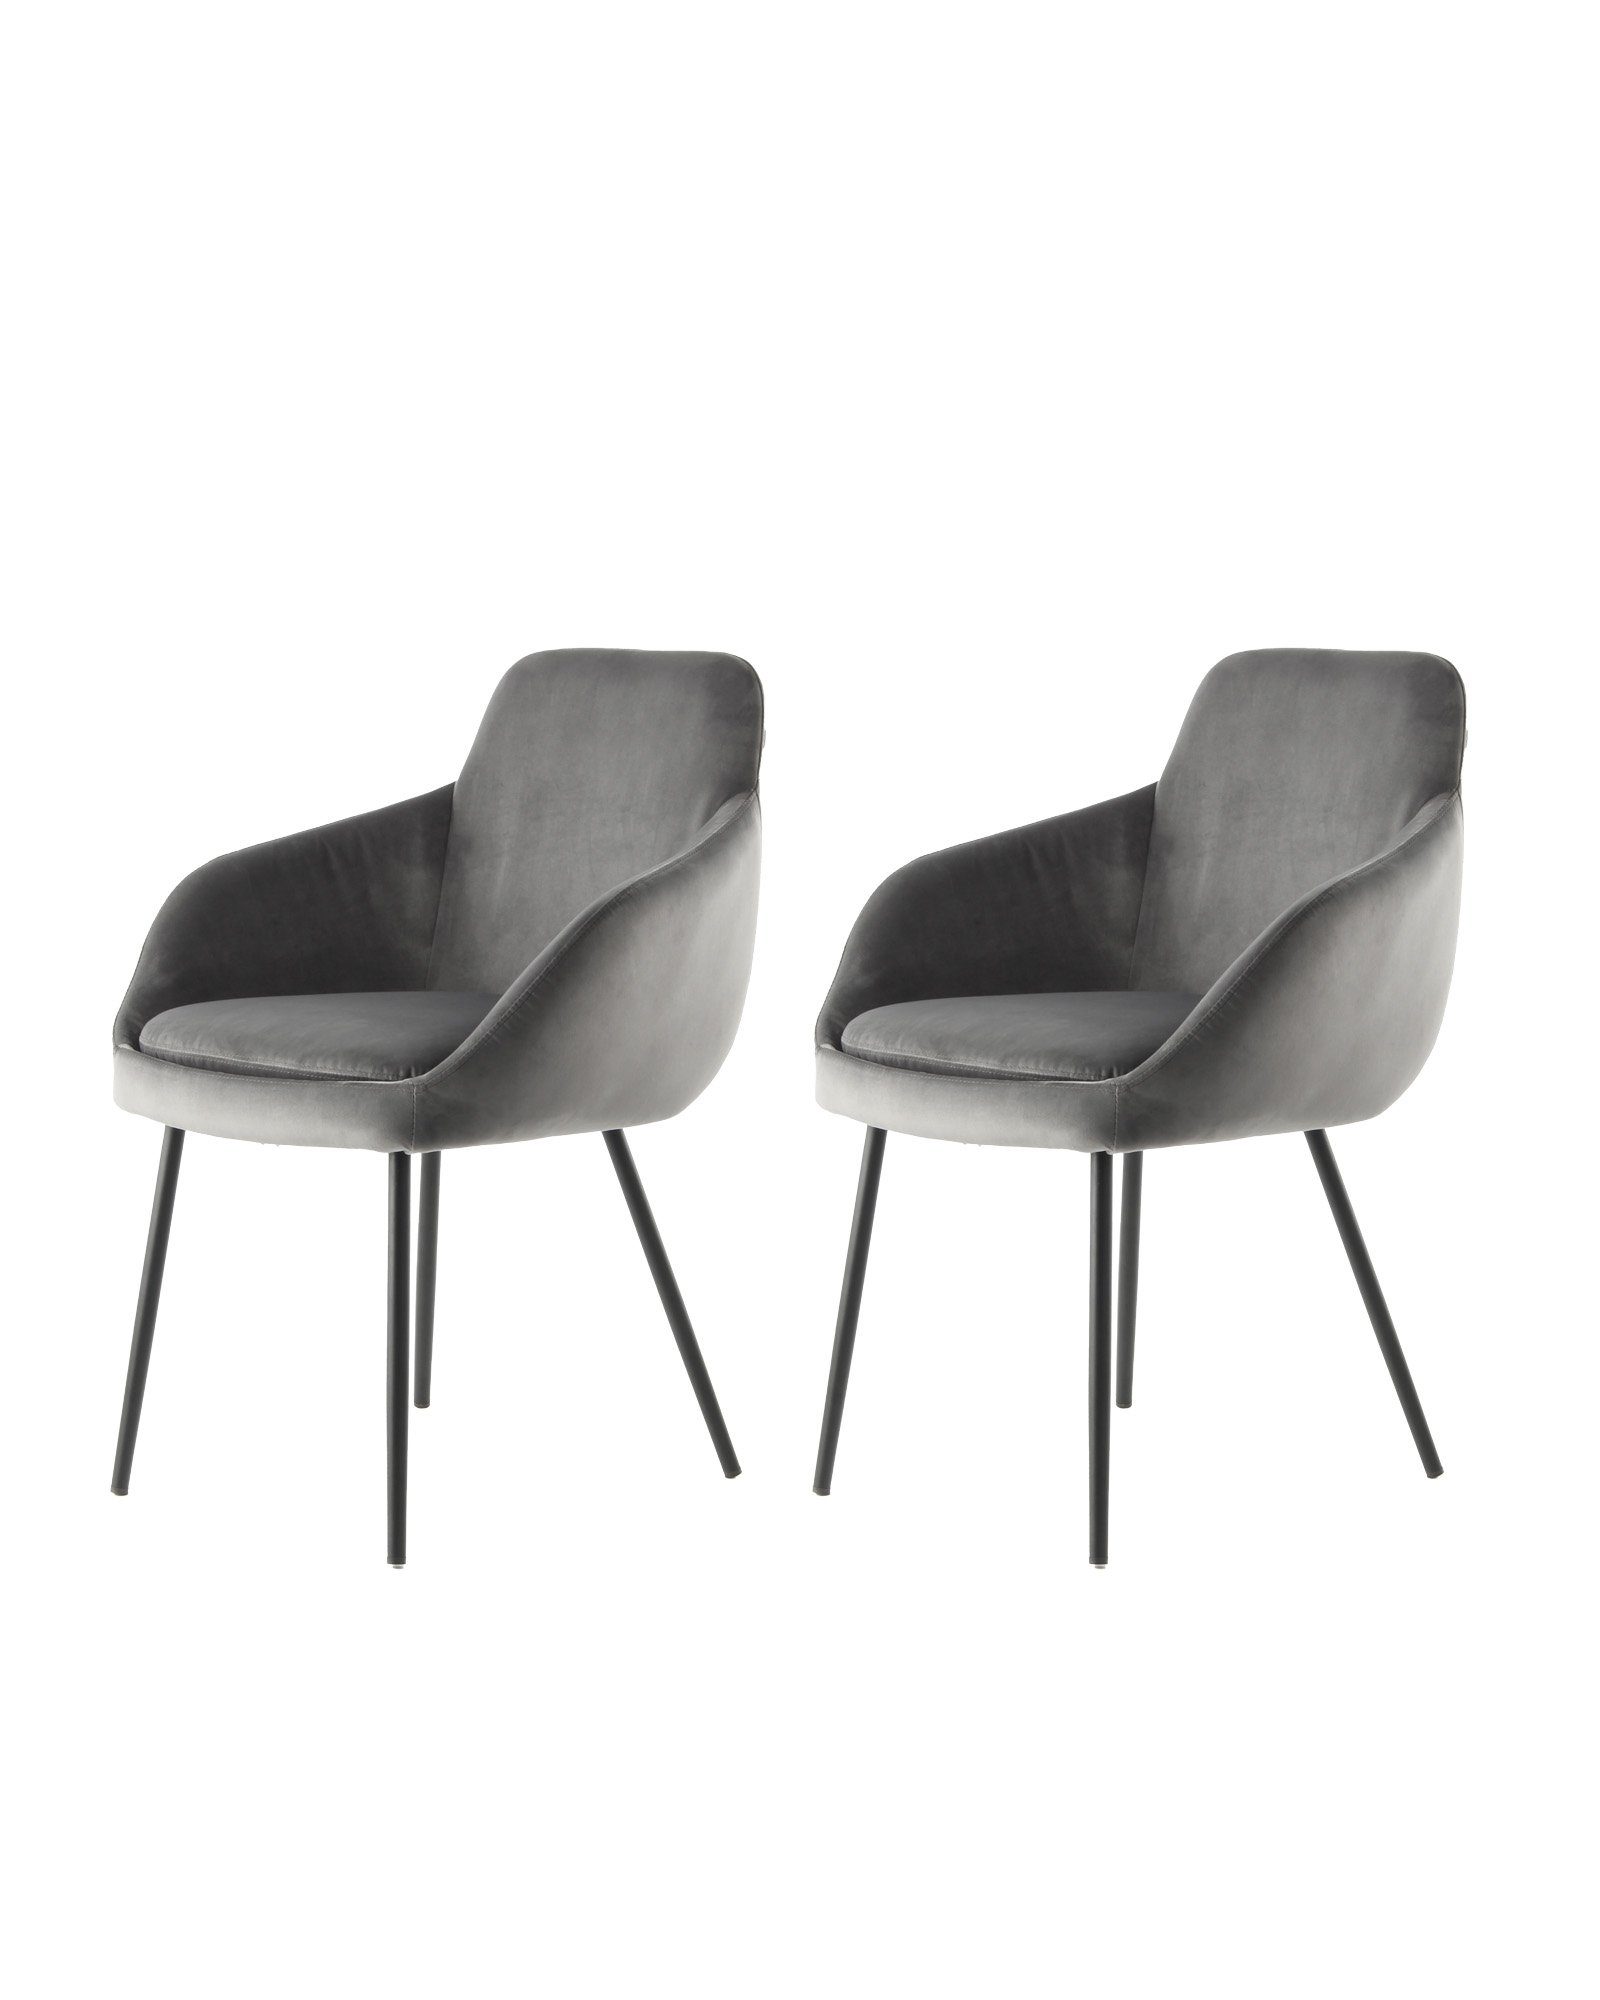 Qiyano Stuhl Polsterstuhl mit Armlehne abnehmbare Polsterkissen modern ergonomisch Grau | Grau